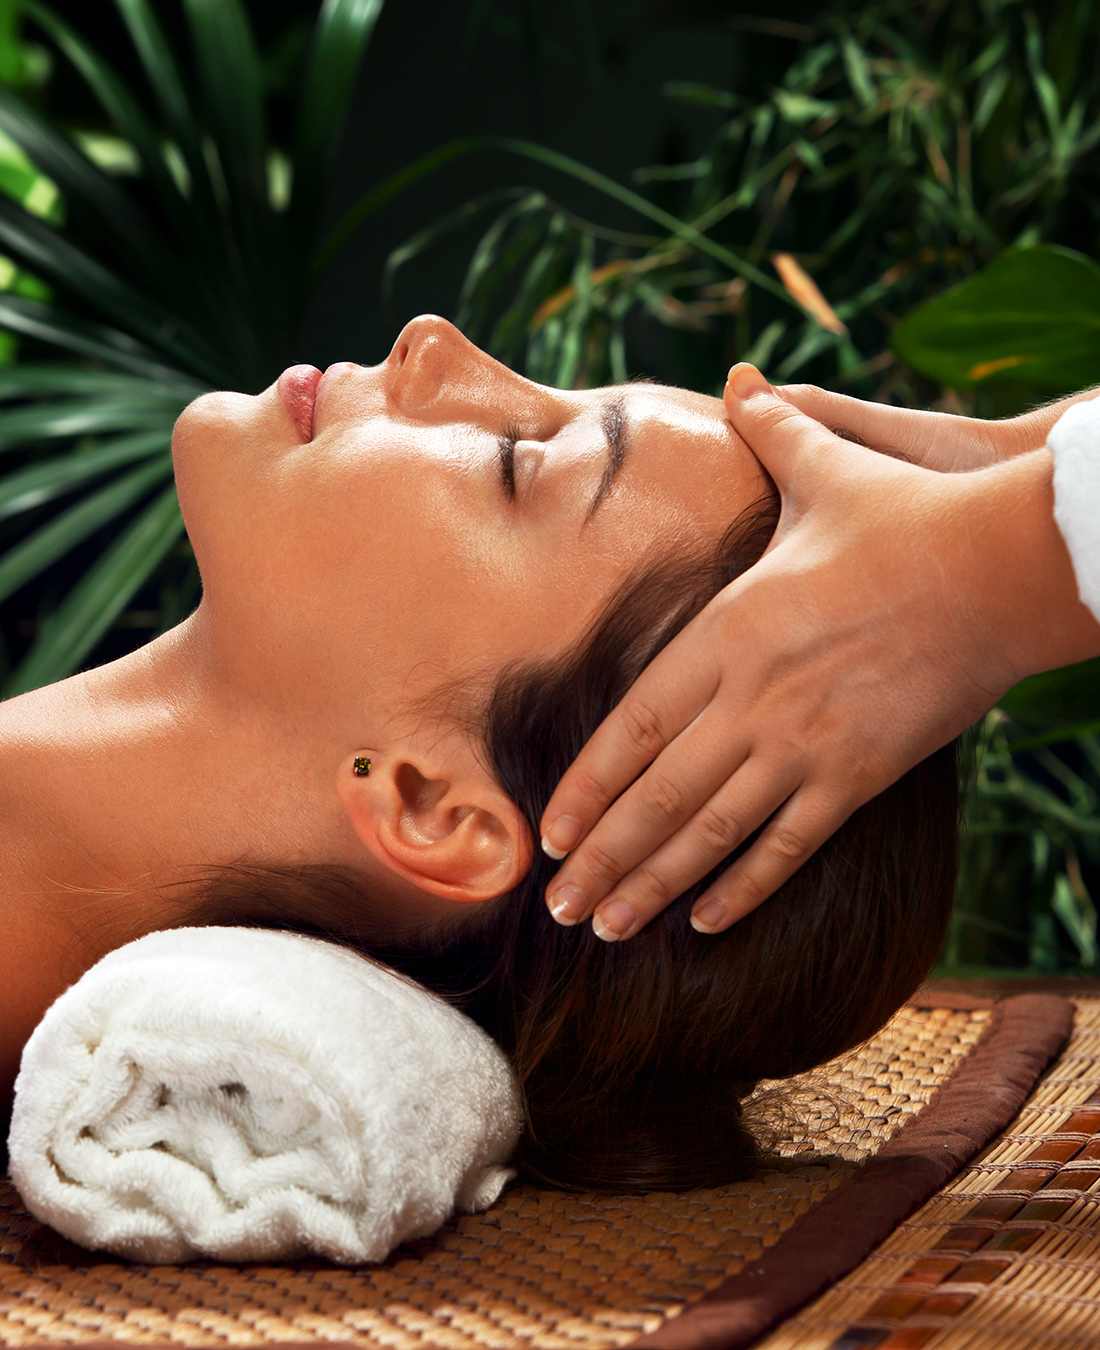 Relaxing Massage in Ibiza - Healing Massage Ibiza - Luxury mobile Massage and Beauty Service Ibiza - Ibiza Wellness Concierge - Beauty ibiza, kinesiology ibiza, massage ibiza, yoga ibiza